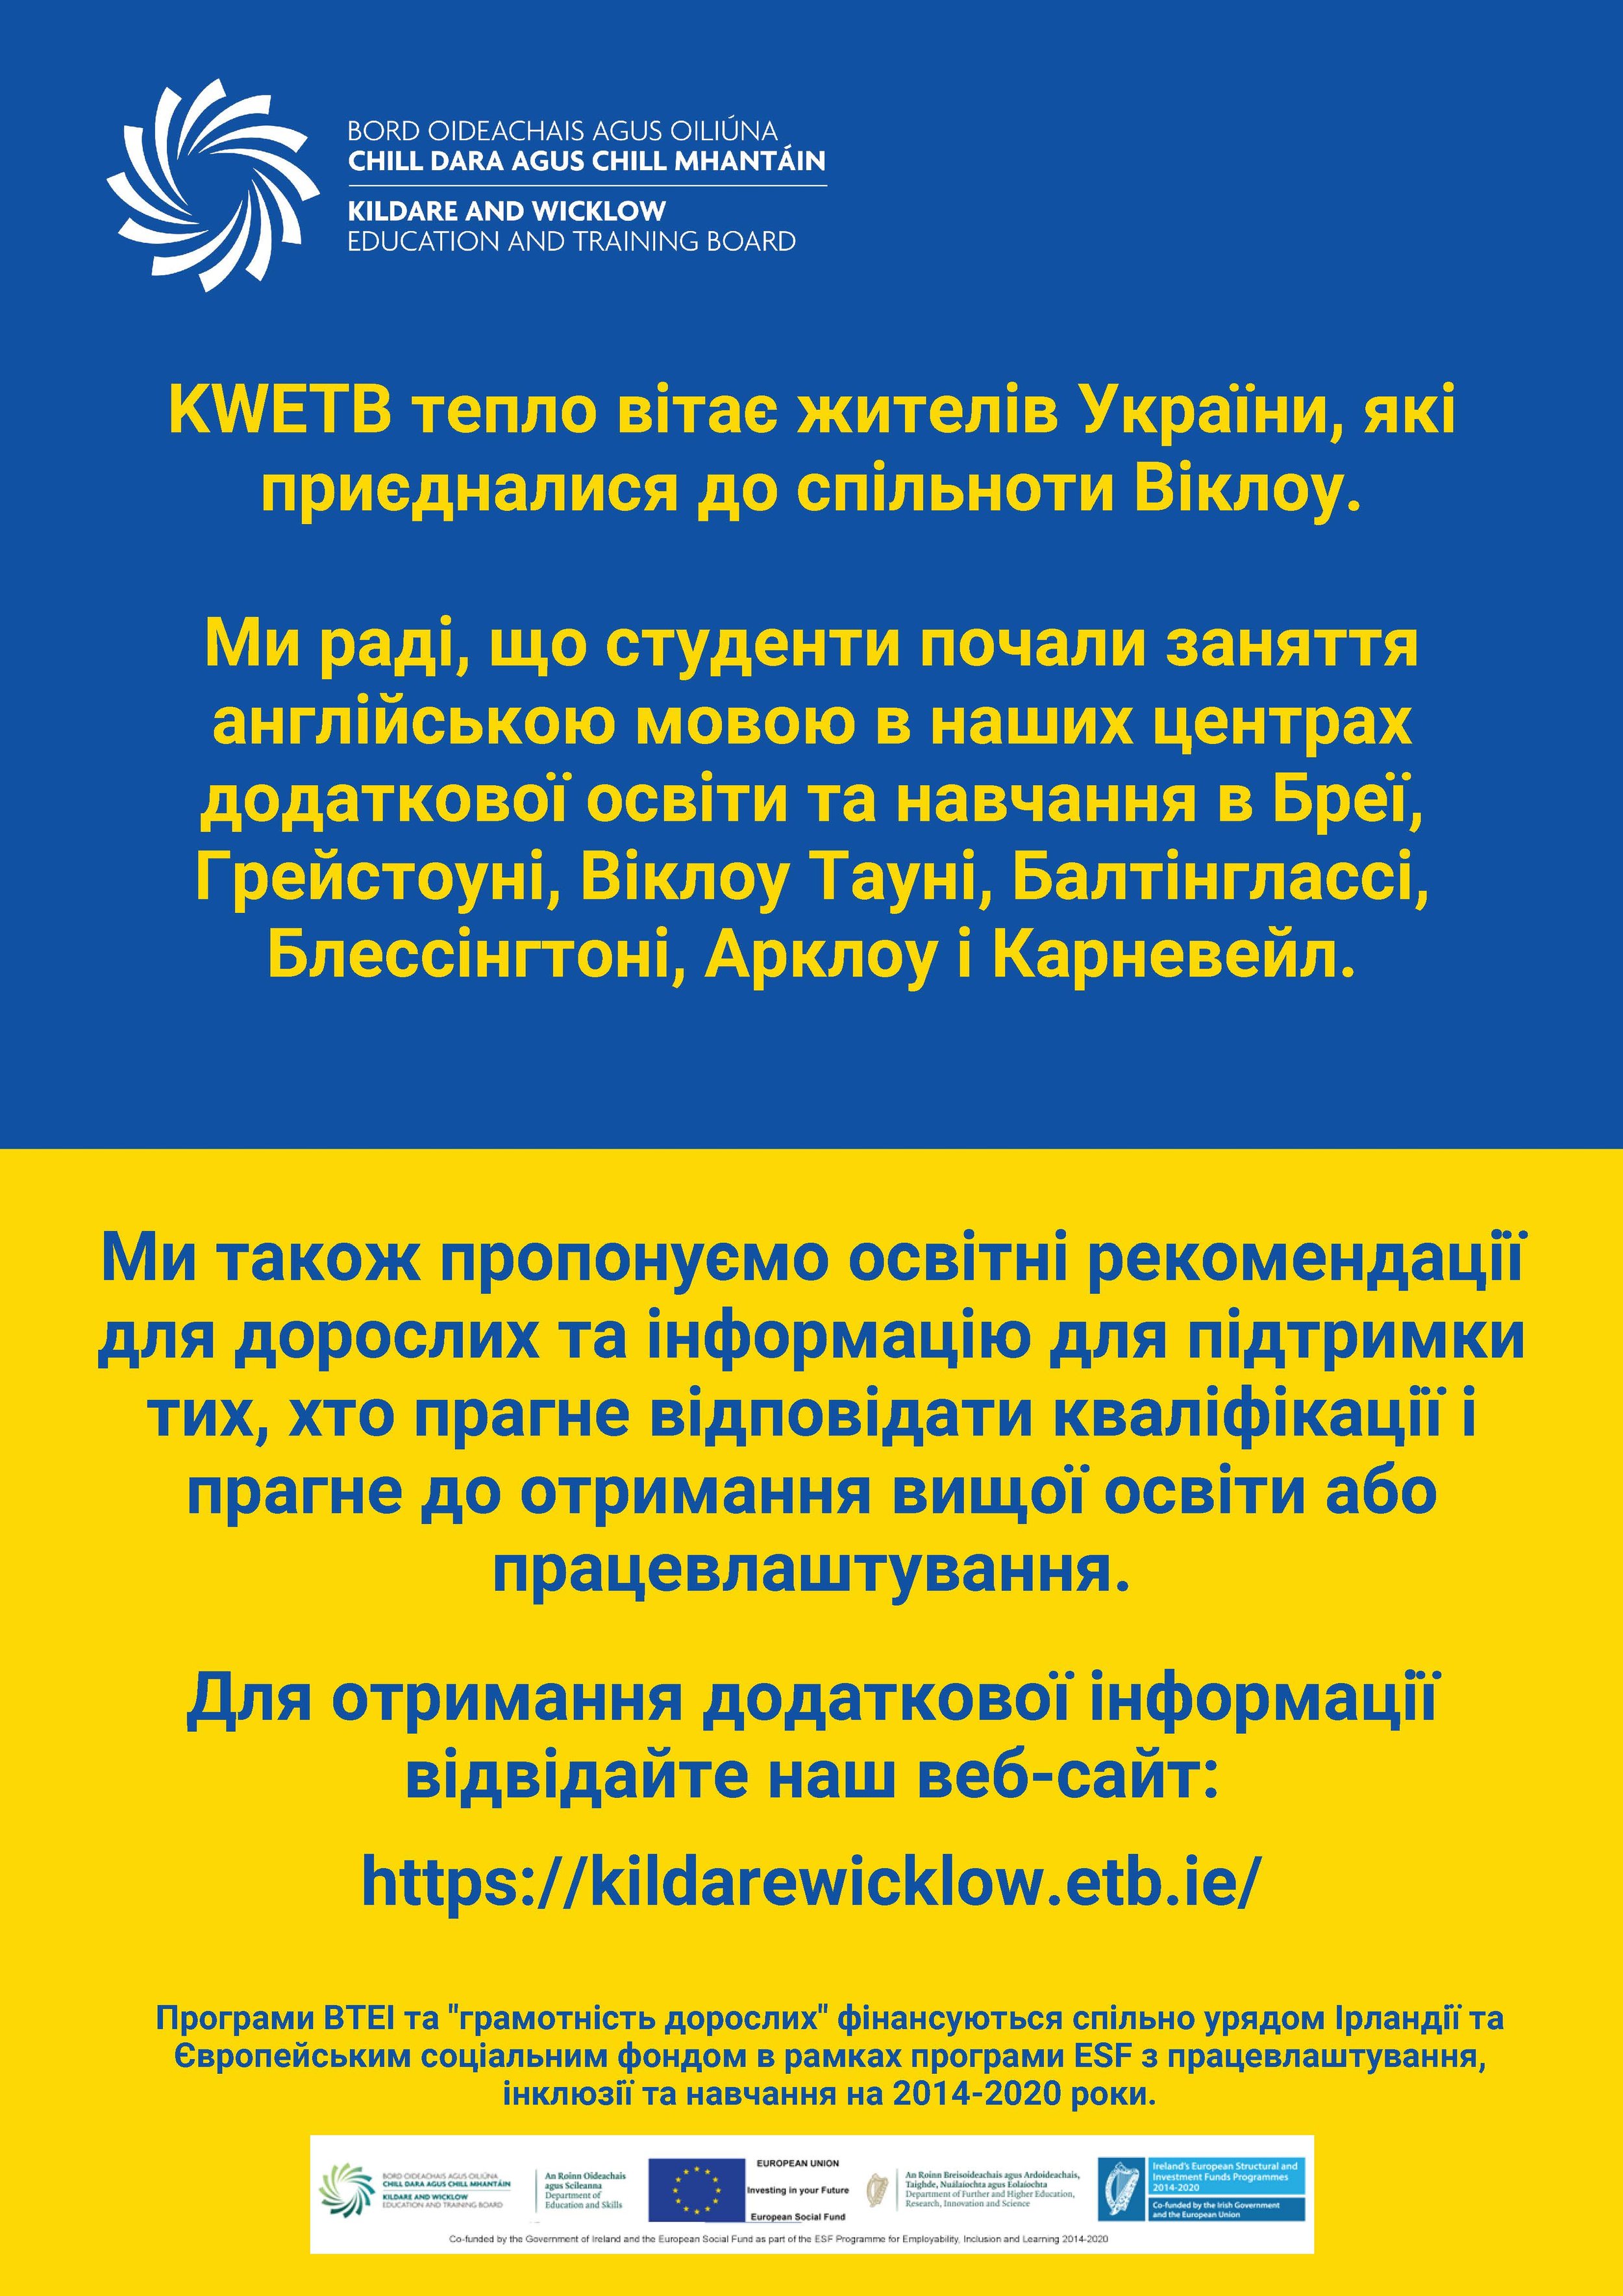 Ukrainian Welcome Poster - A4 (Ukrainian).jpg